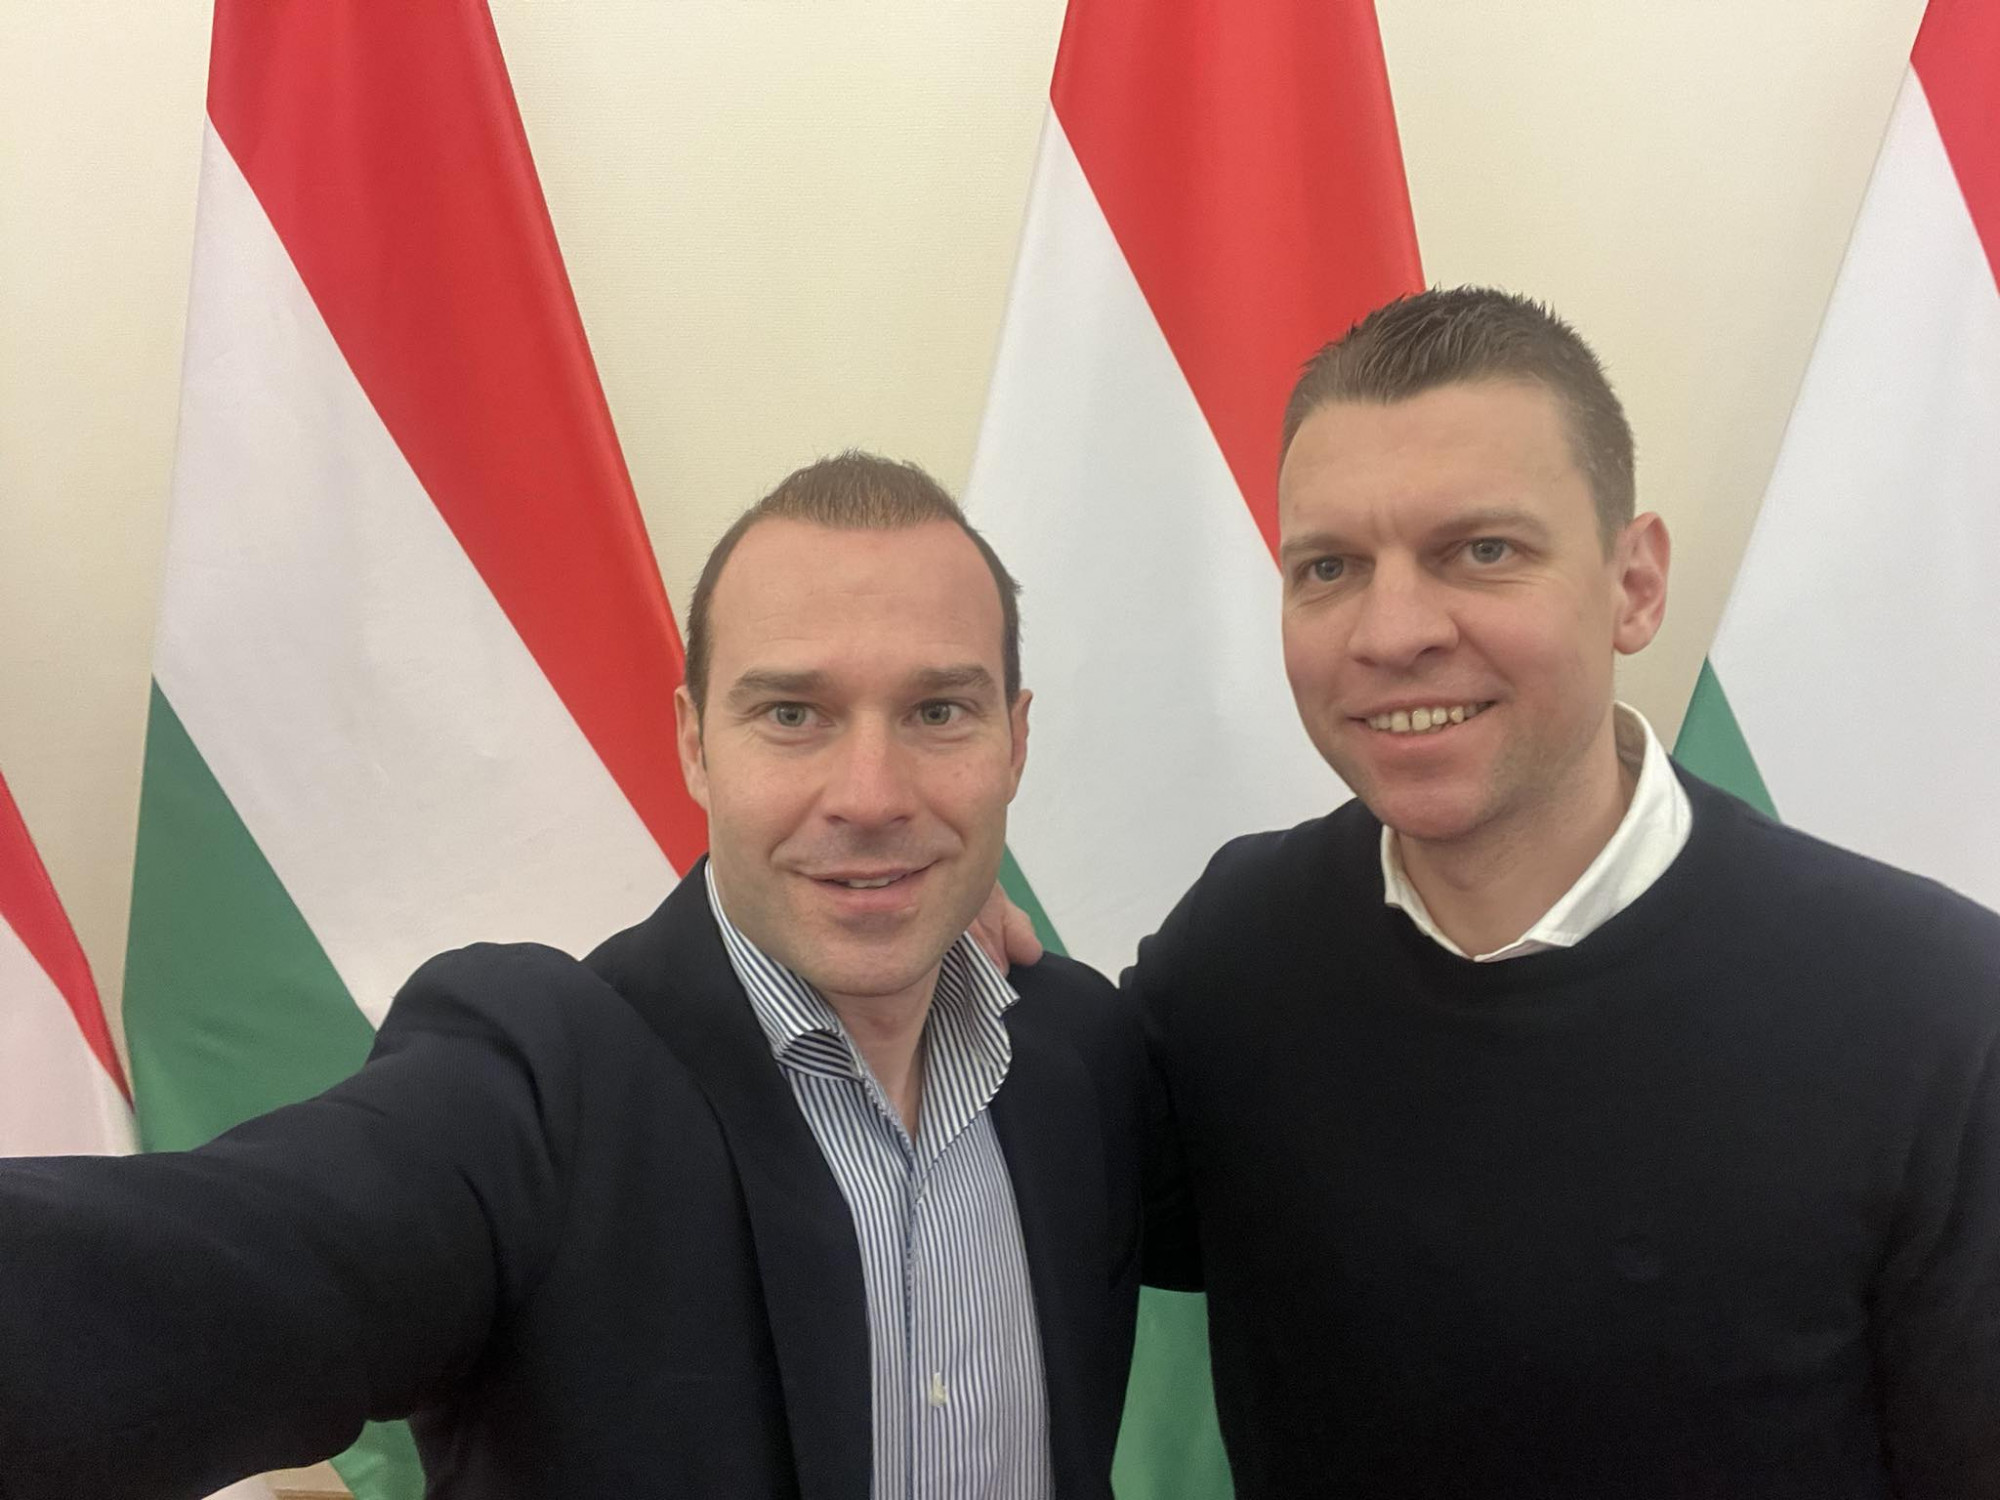 Menczer Tamás lesz Hollik István helyett a Fidesz kommunikációs igazgatója